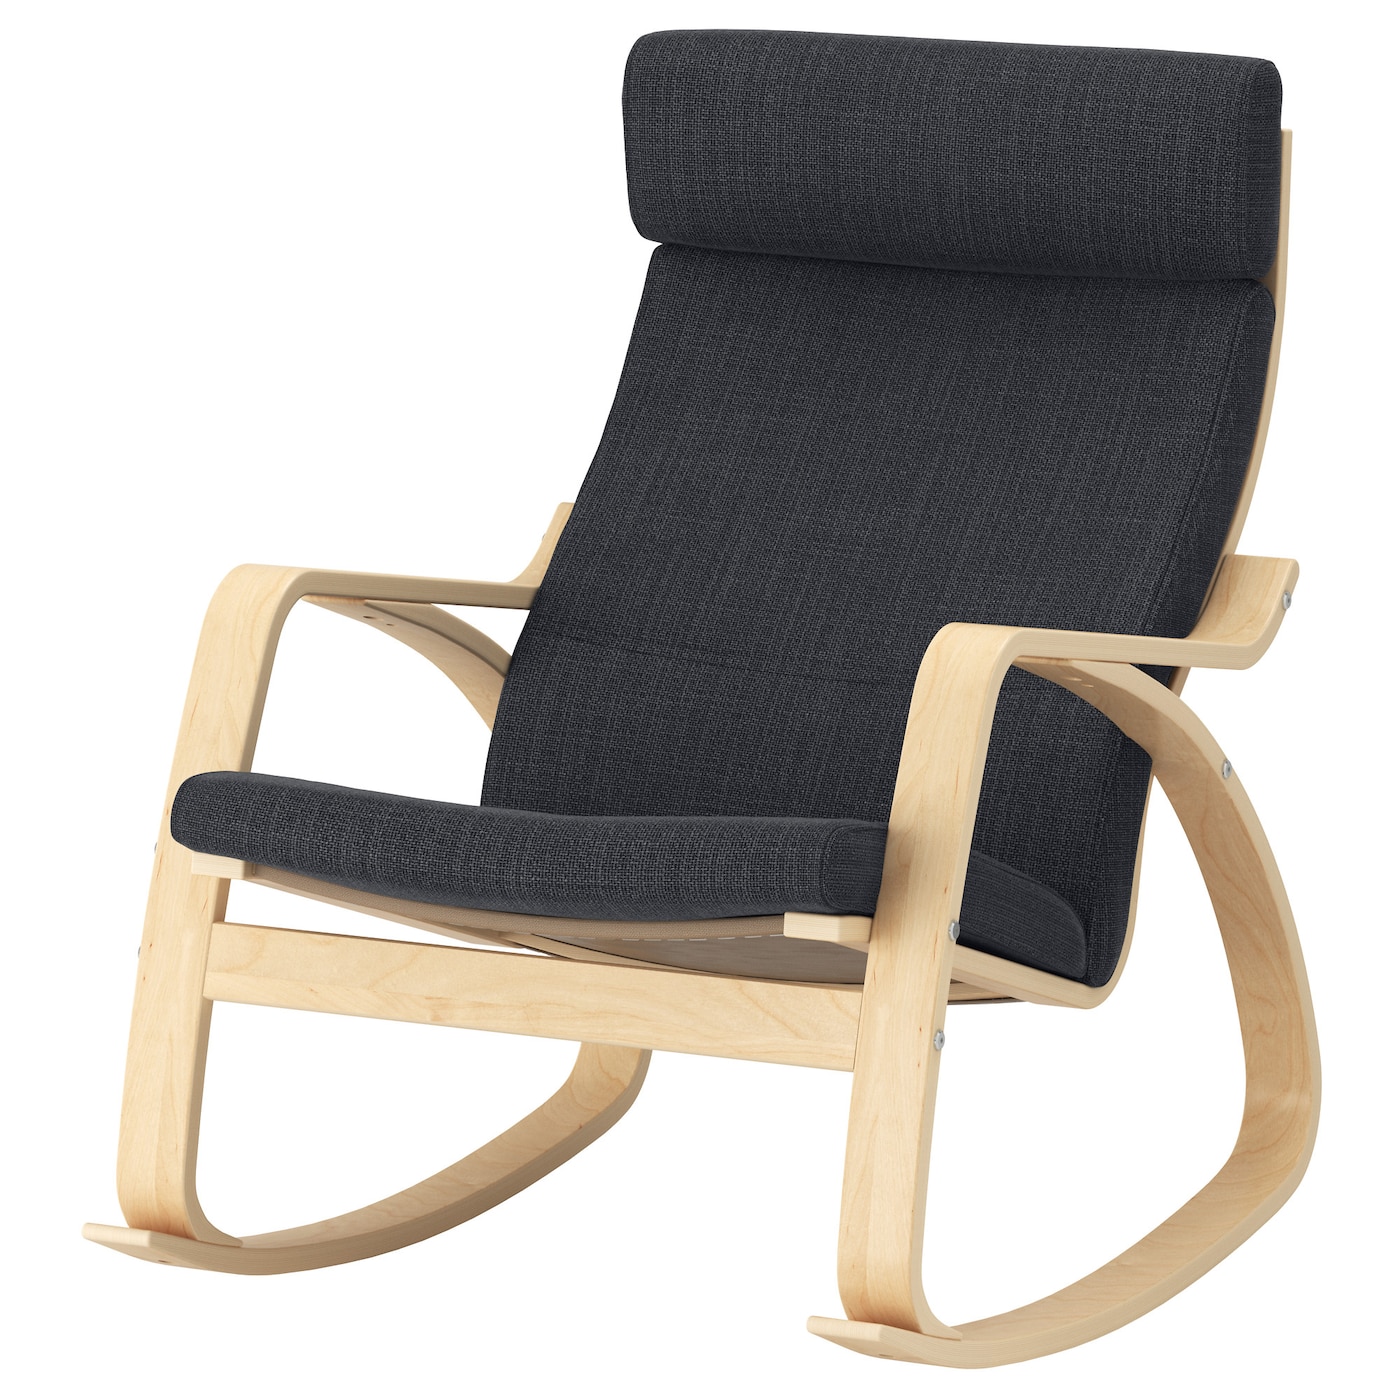 современное простое складное кресло качалка для всей семьи балкона спальни кресло с луной диван для отдыха кресло качалка мебель для го ПОЭНГ Кресло-качалка, березовый шпон/Хилларед антрацит POÄNG IKEA